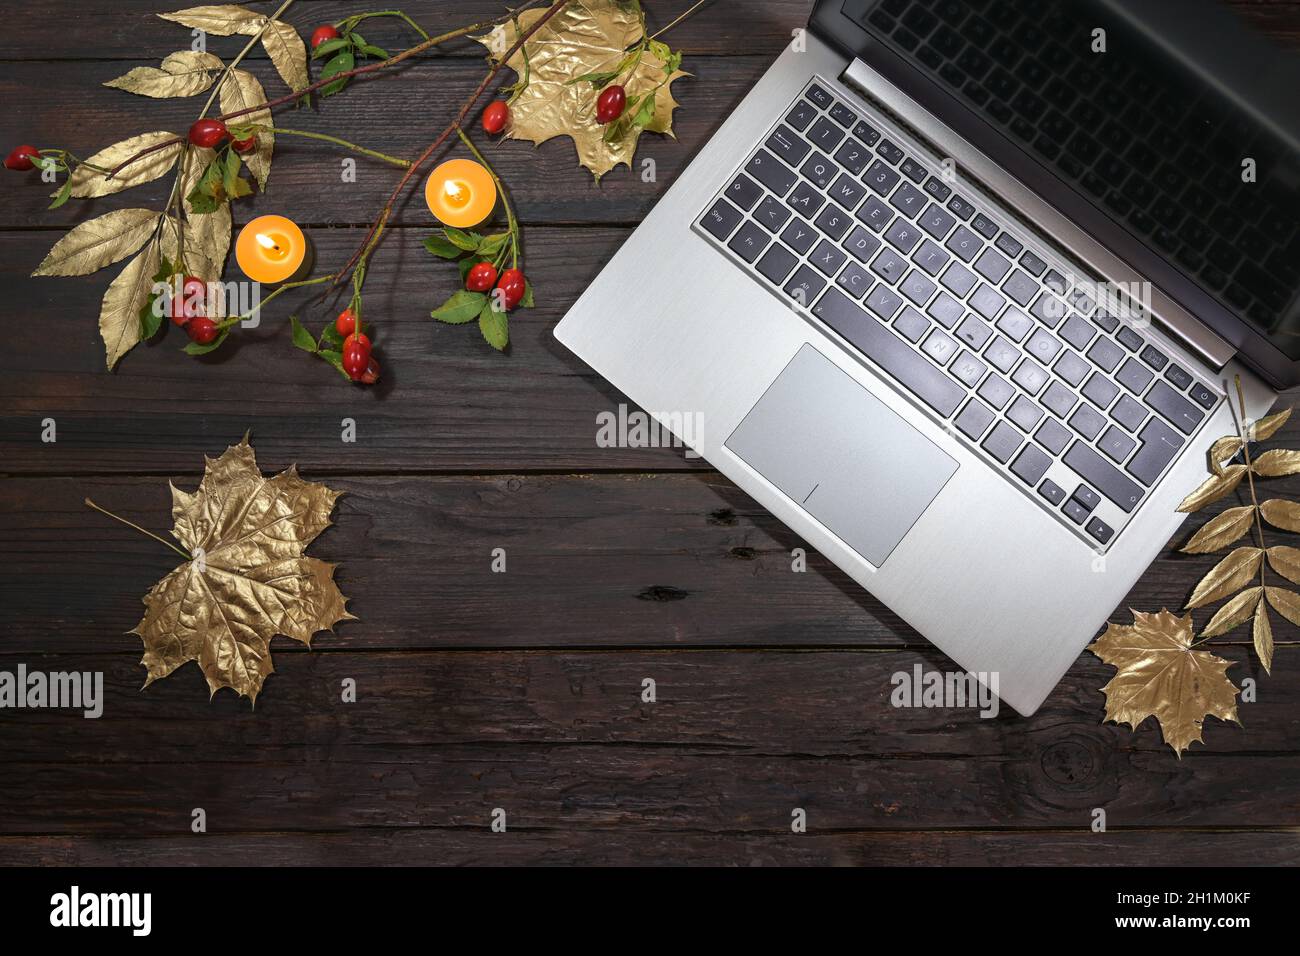 computer portatile in argento con foglie d'autunno dipinte d'oro, fianchi di rose e candele su un tavolo rustico scuro in legno, attività stagionali in ufficio casa, fla Foto Stock